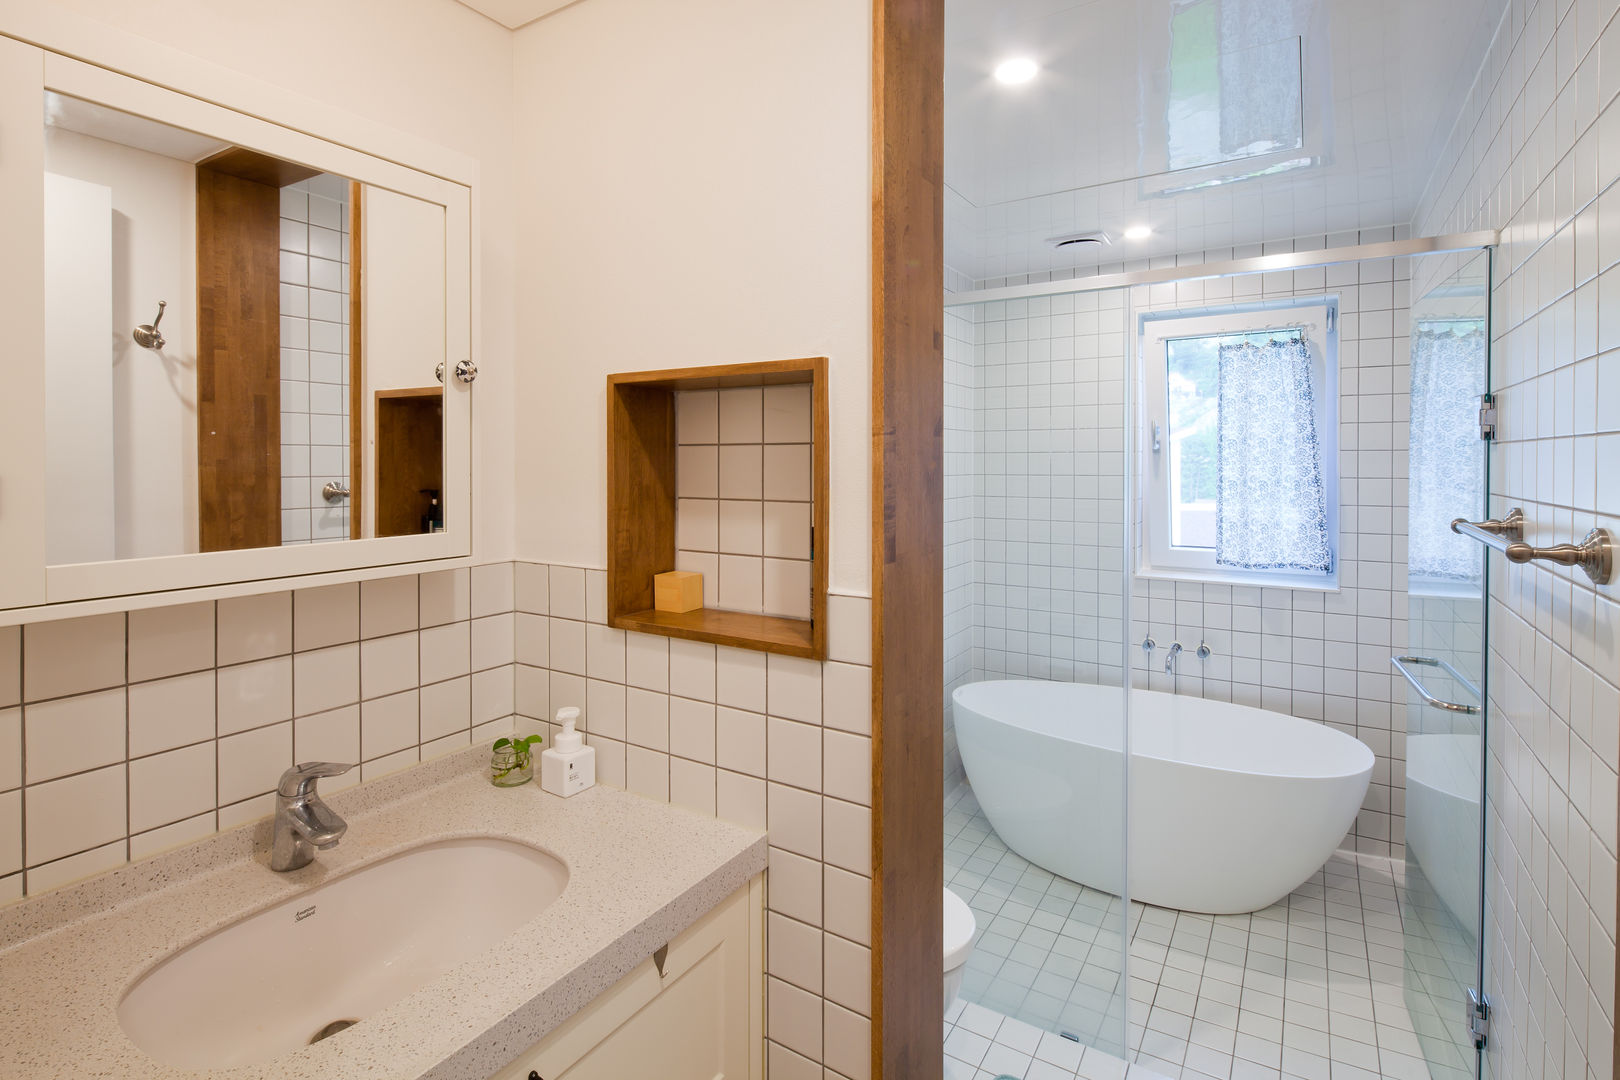 [양평목조주택]서종면 정배리에 위치한 양평목조주택 정배리2호, 위드하임 Withheim 위드하임 Withheim Modern bathroom Tiles